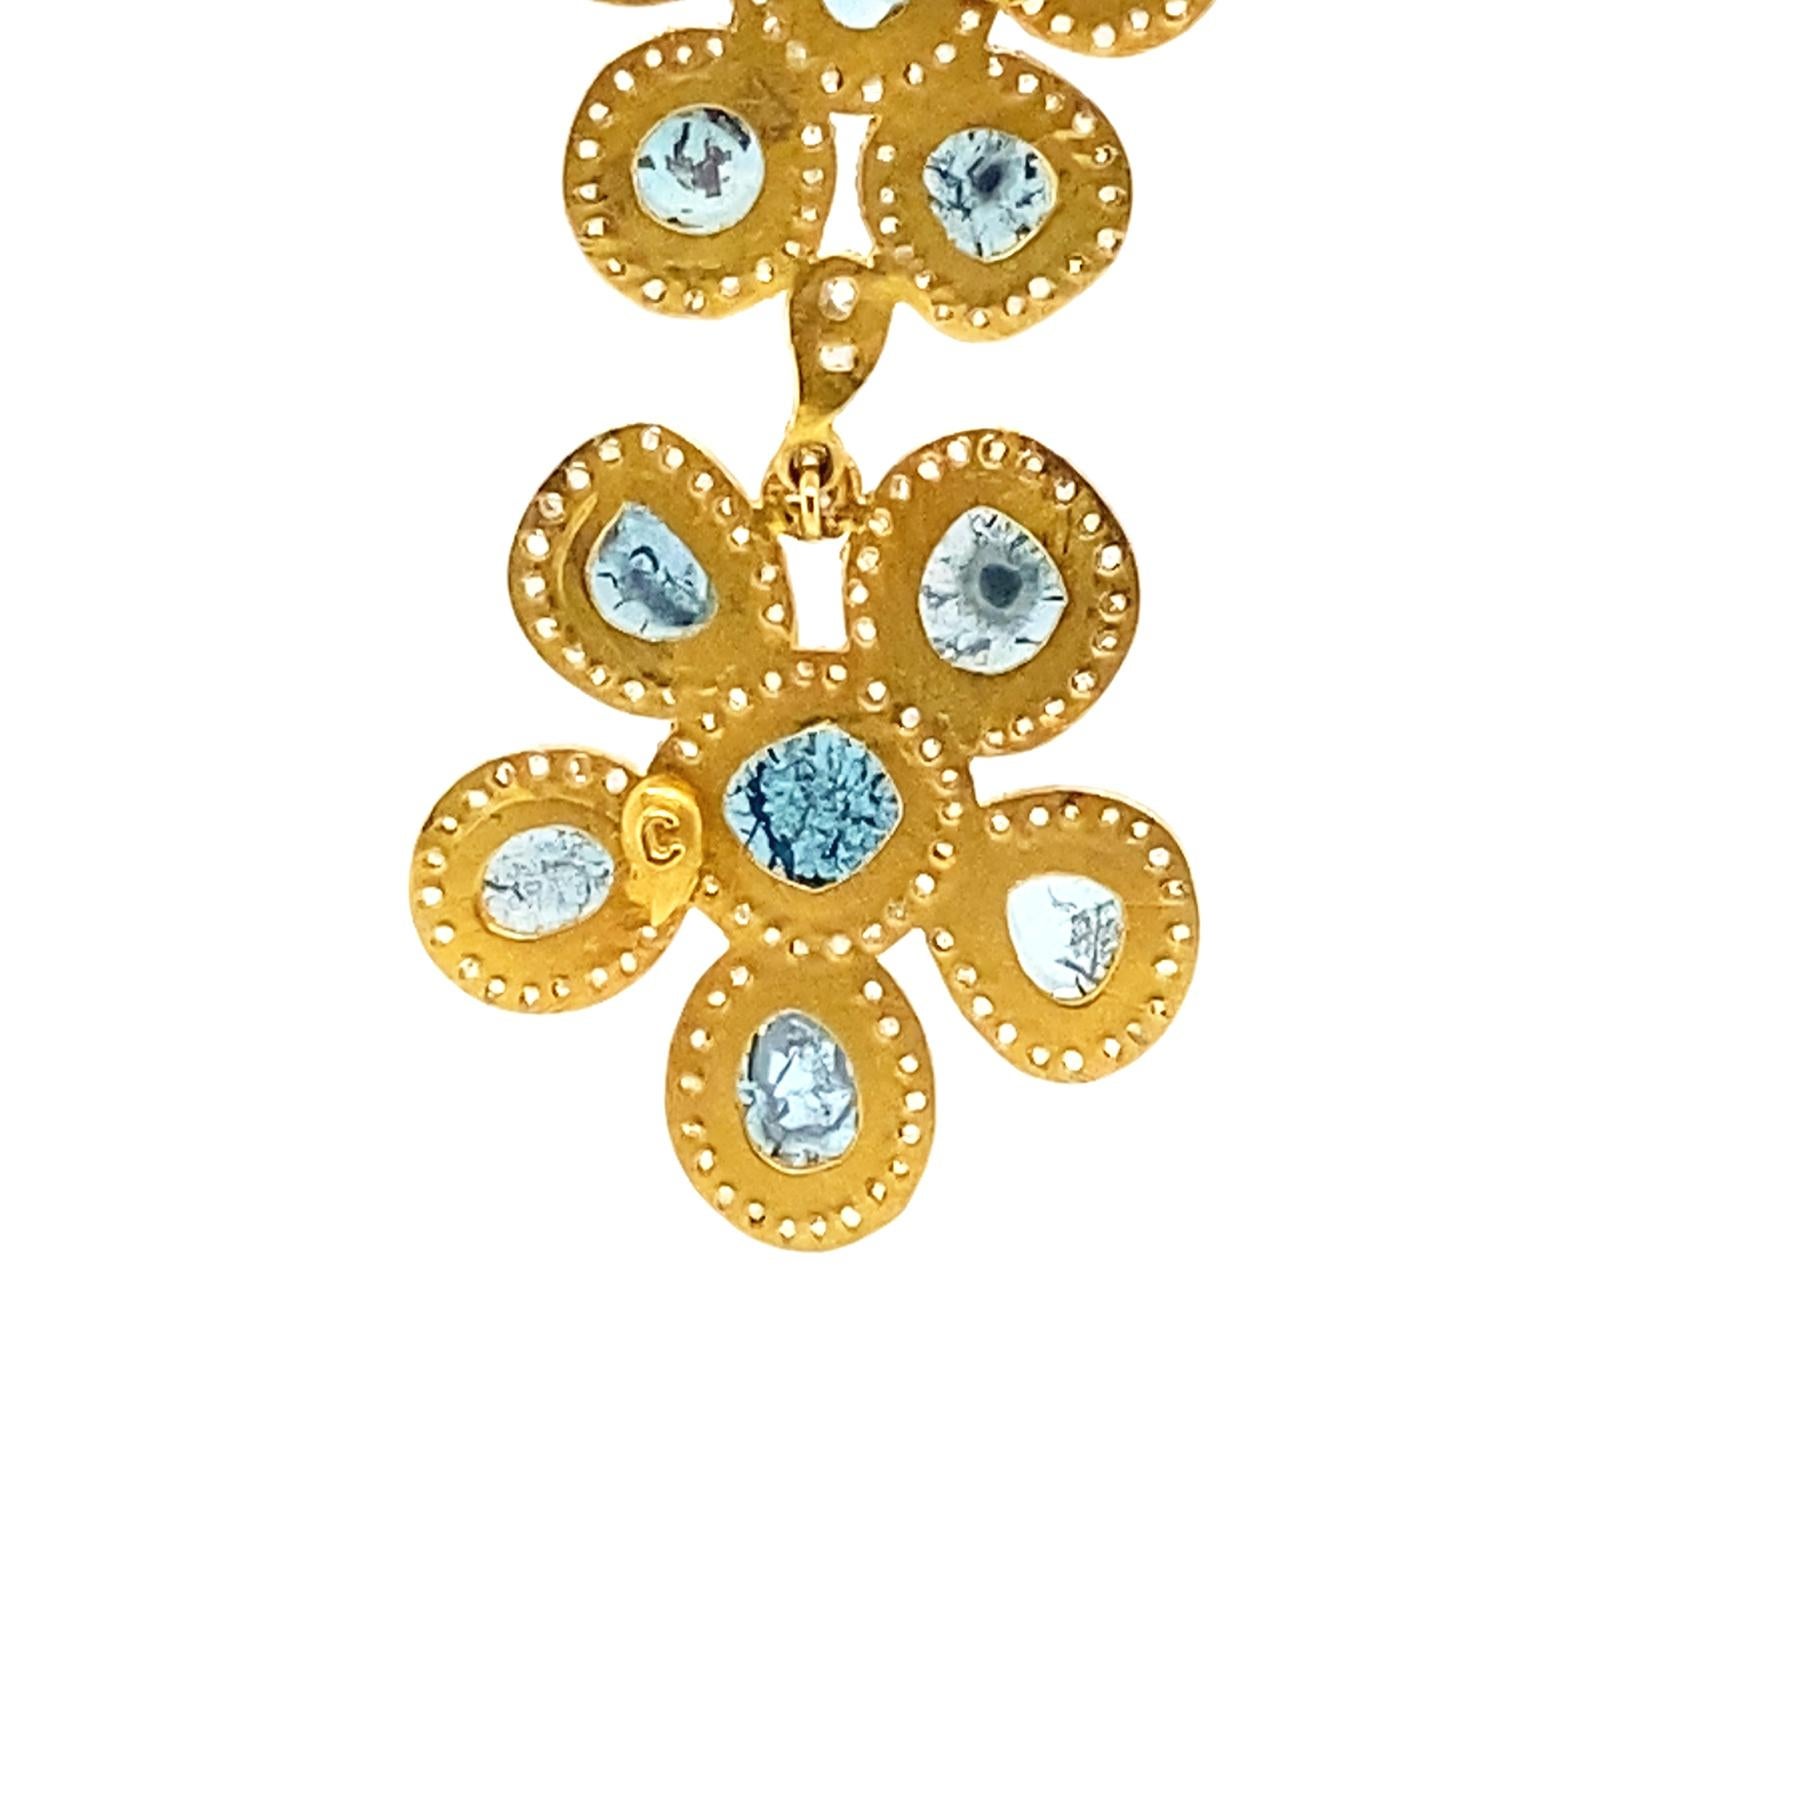 Modern Fancy Double Flower Earrings Set in Yellow Gold with 4.04 Carat Blue Diamonds